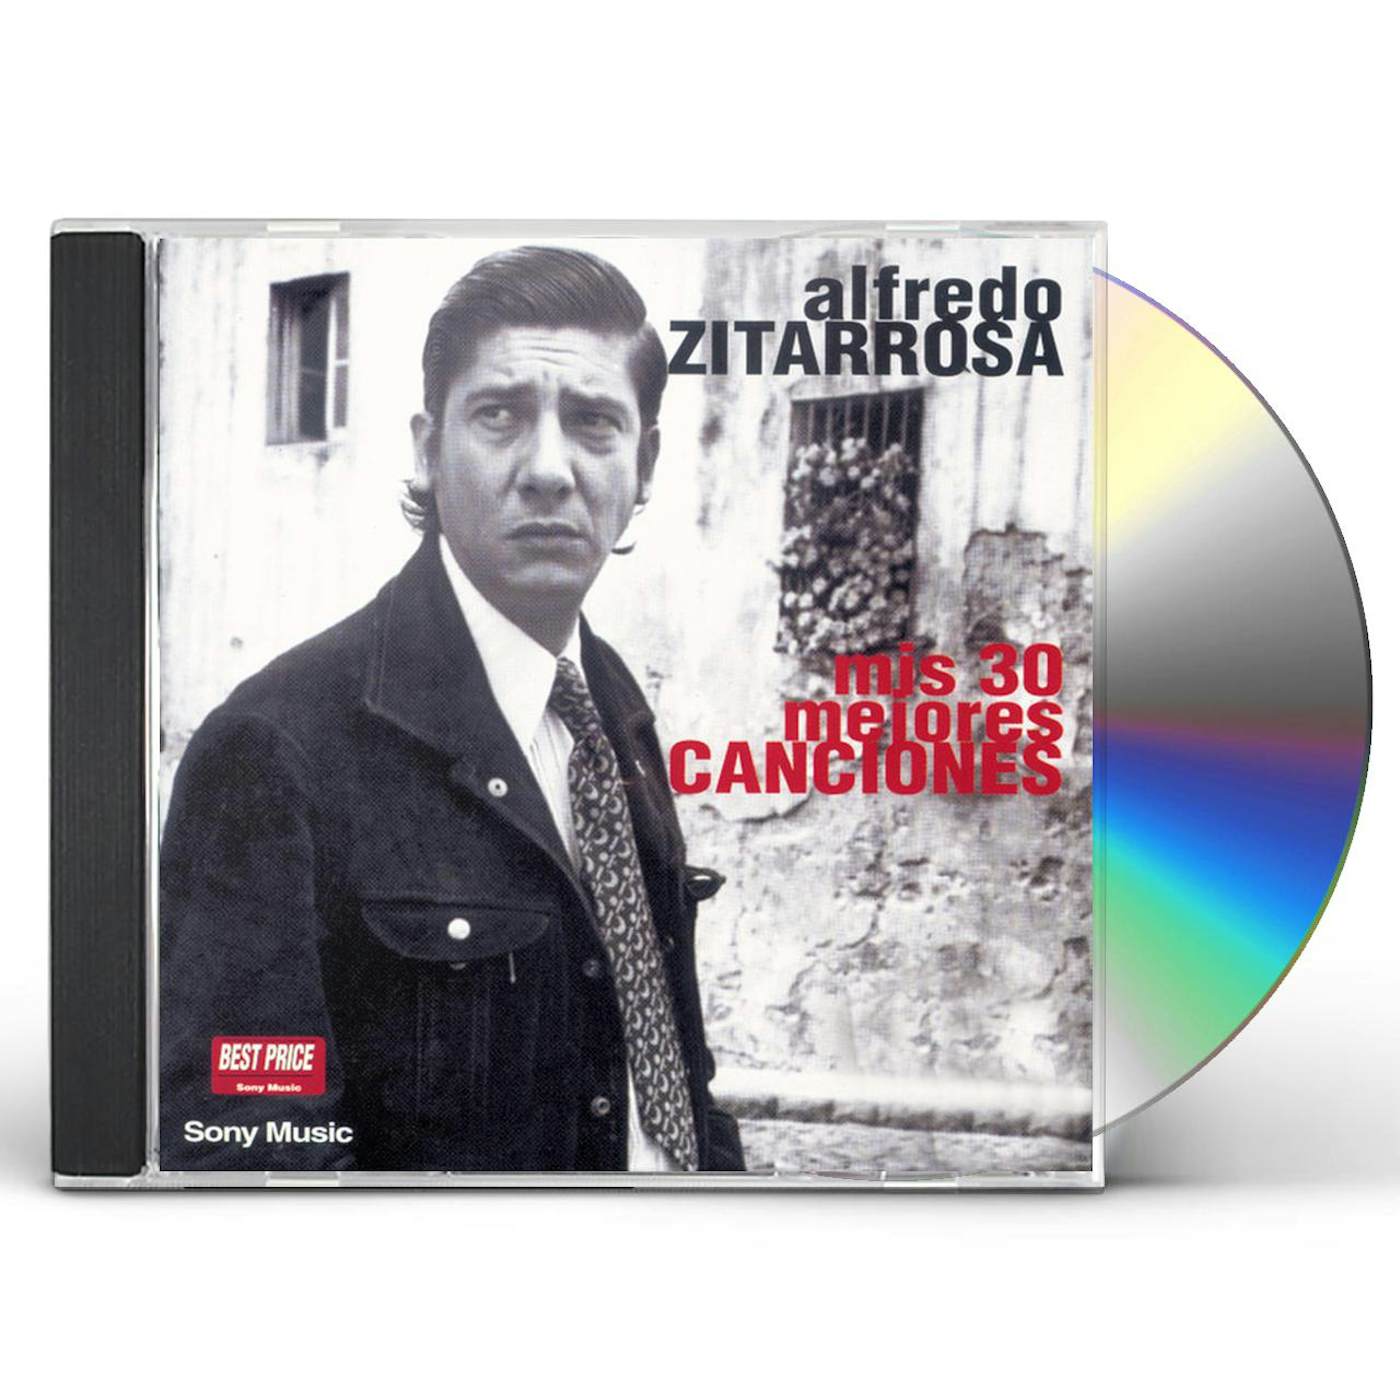 Alfredo Zitarrosa MIS MEJORES 30 CANCIONES CD